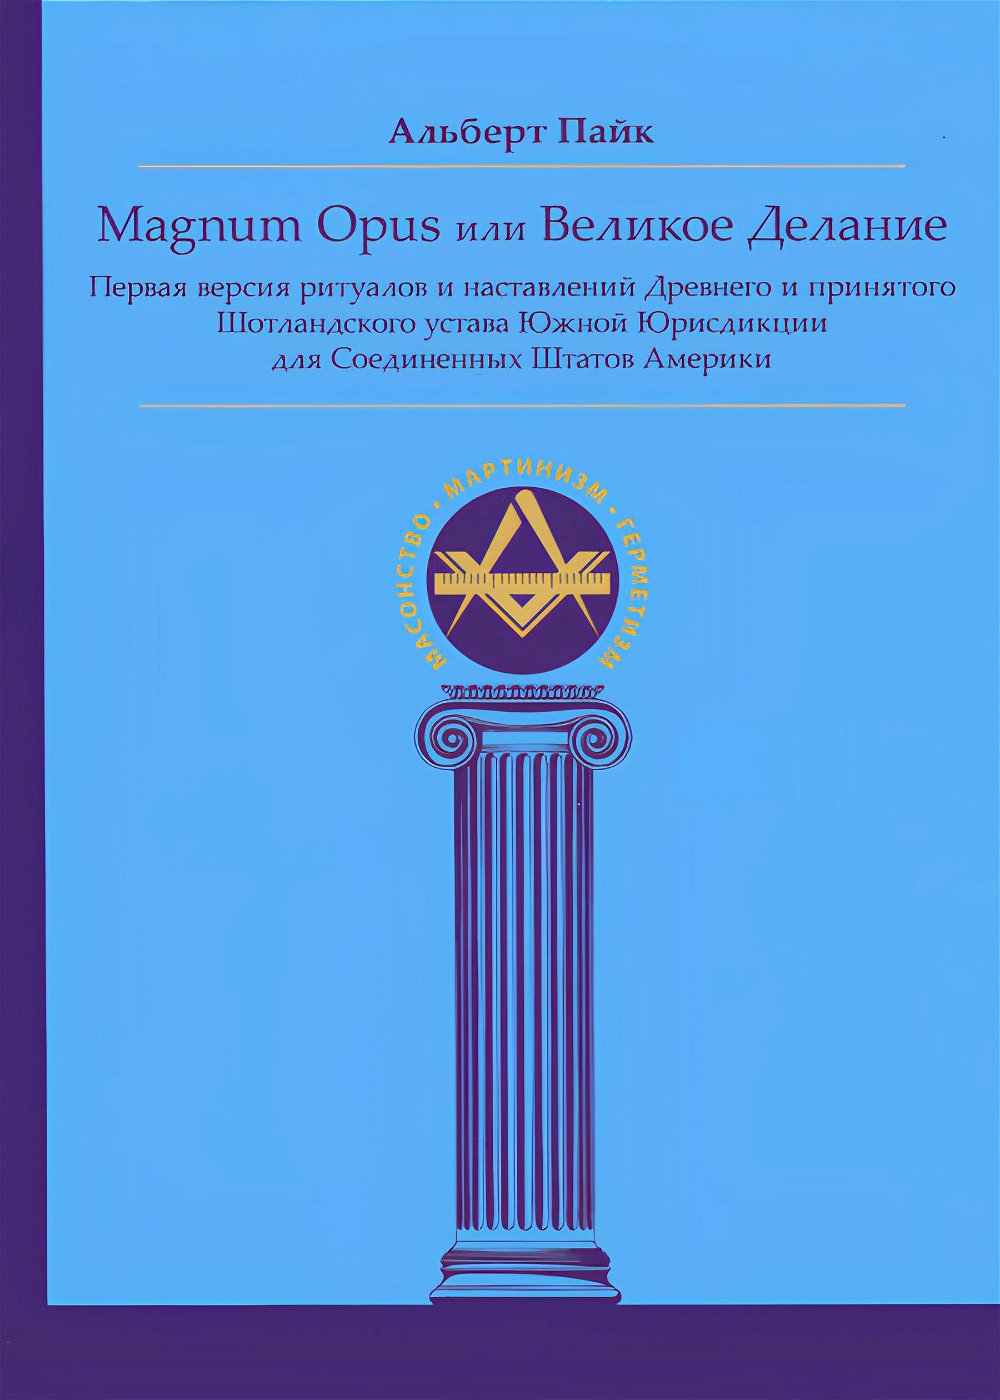 "Magnum Opus или Великое Делание. Первая версия ритуалов и наставлений Древнего и принятого Шотландского устава Южной Юрисдикции для Соединенных Штатов Америки" 